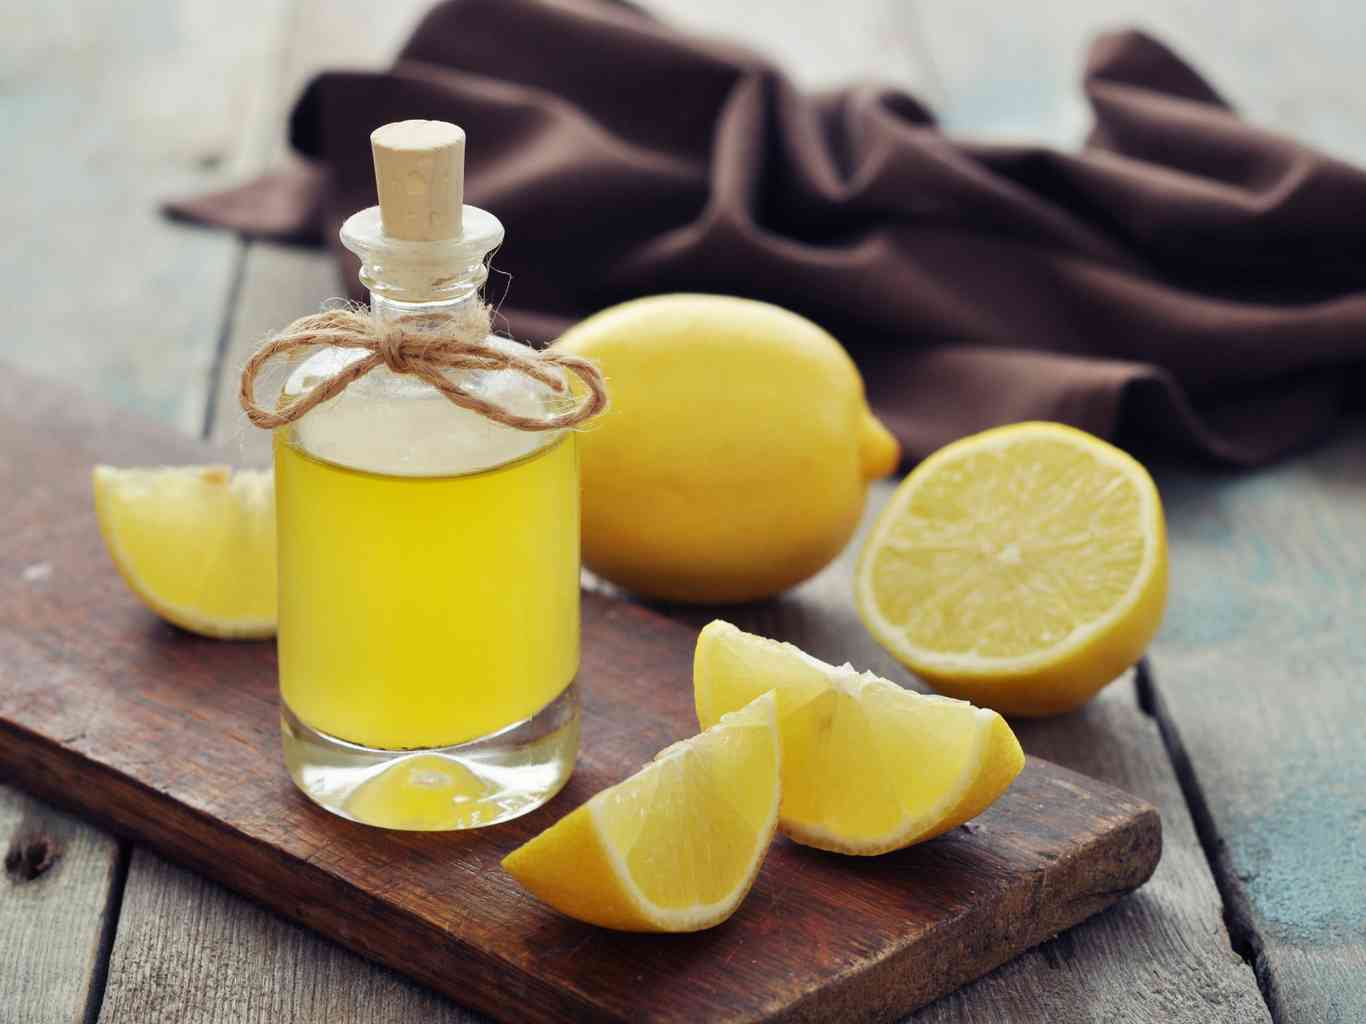  эфирное масло лимона: применение и лечебные свойства масла лимона